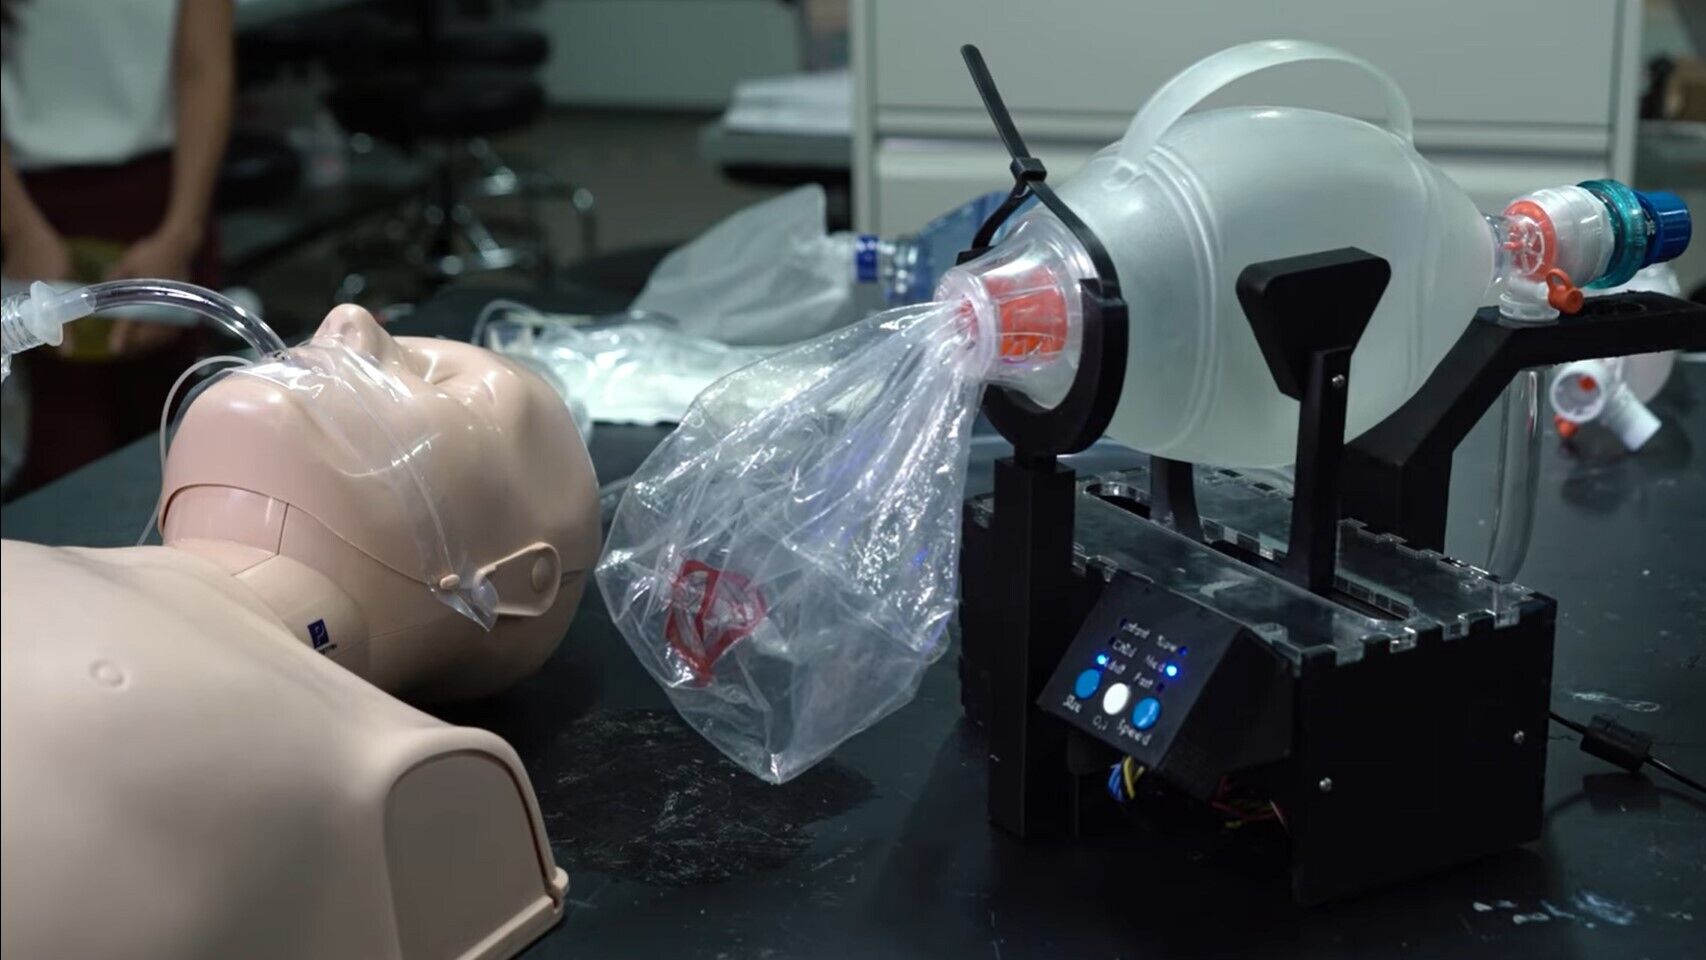 Ingenieros españoles se unen y fabrican respiradores con impresión 3D